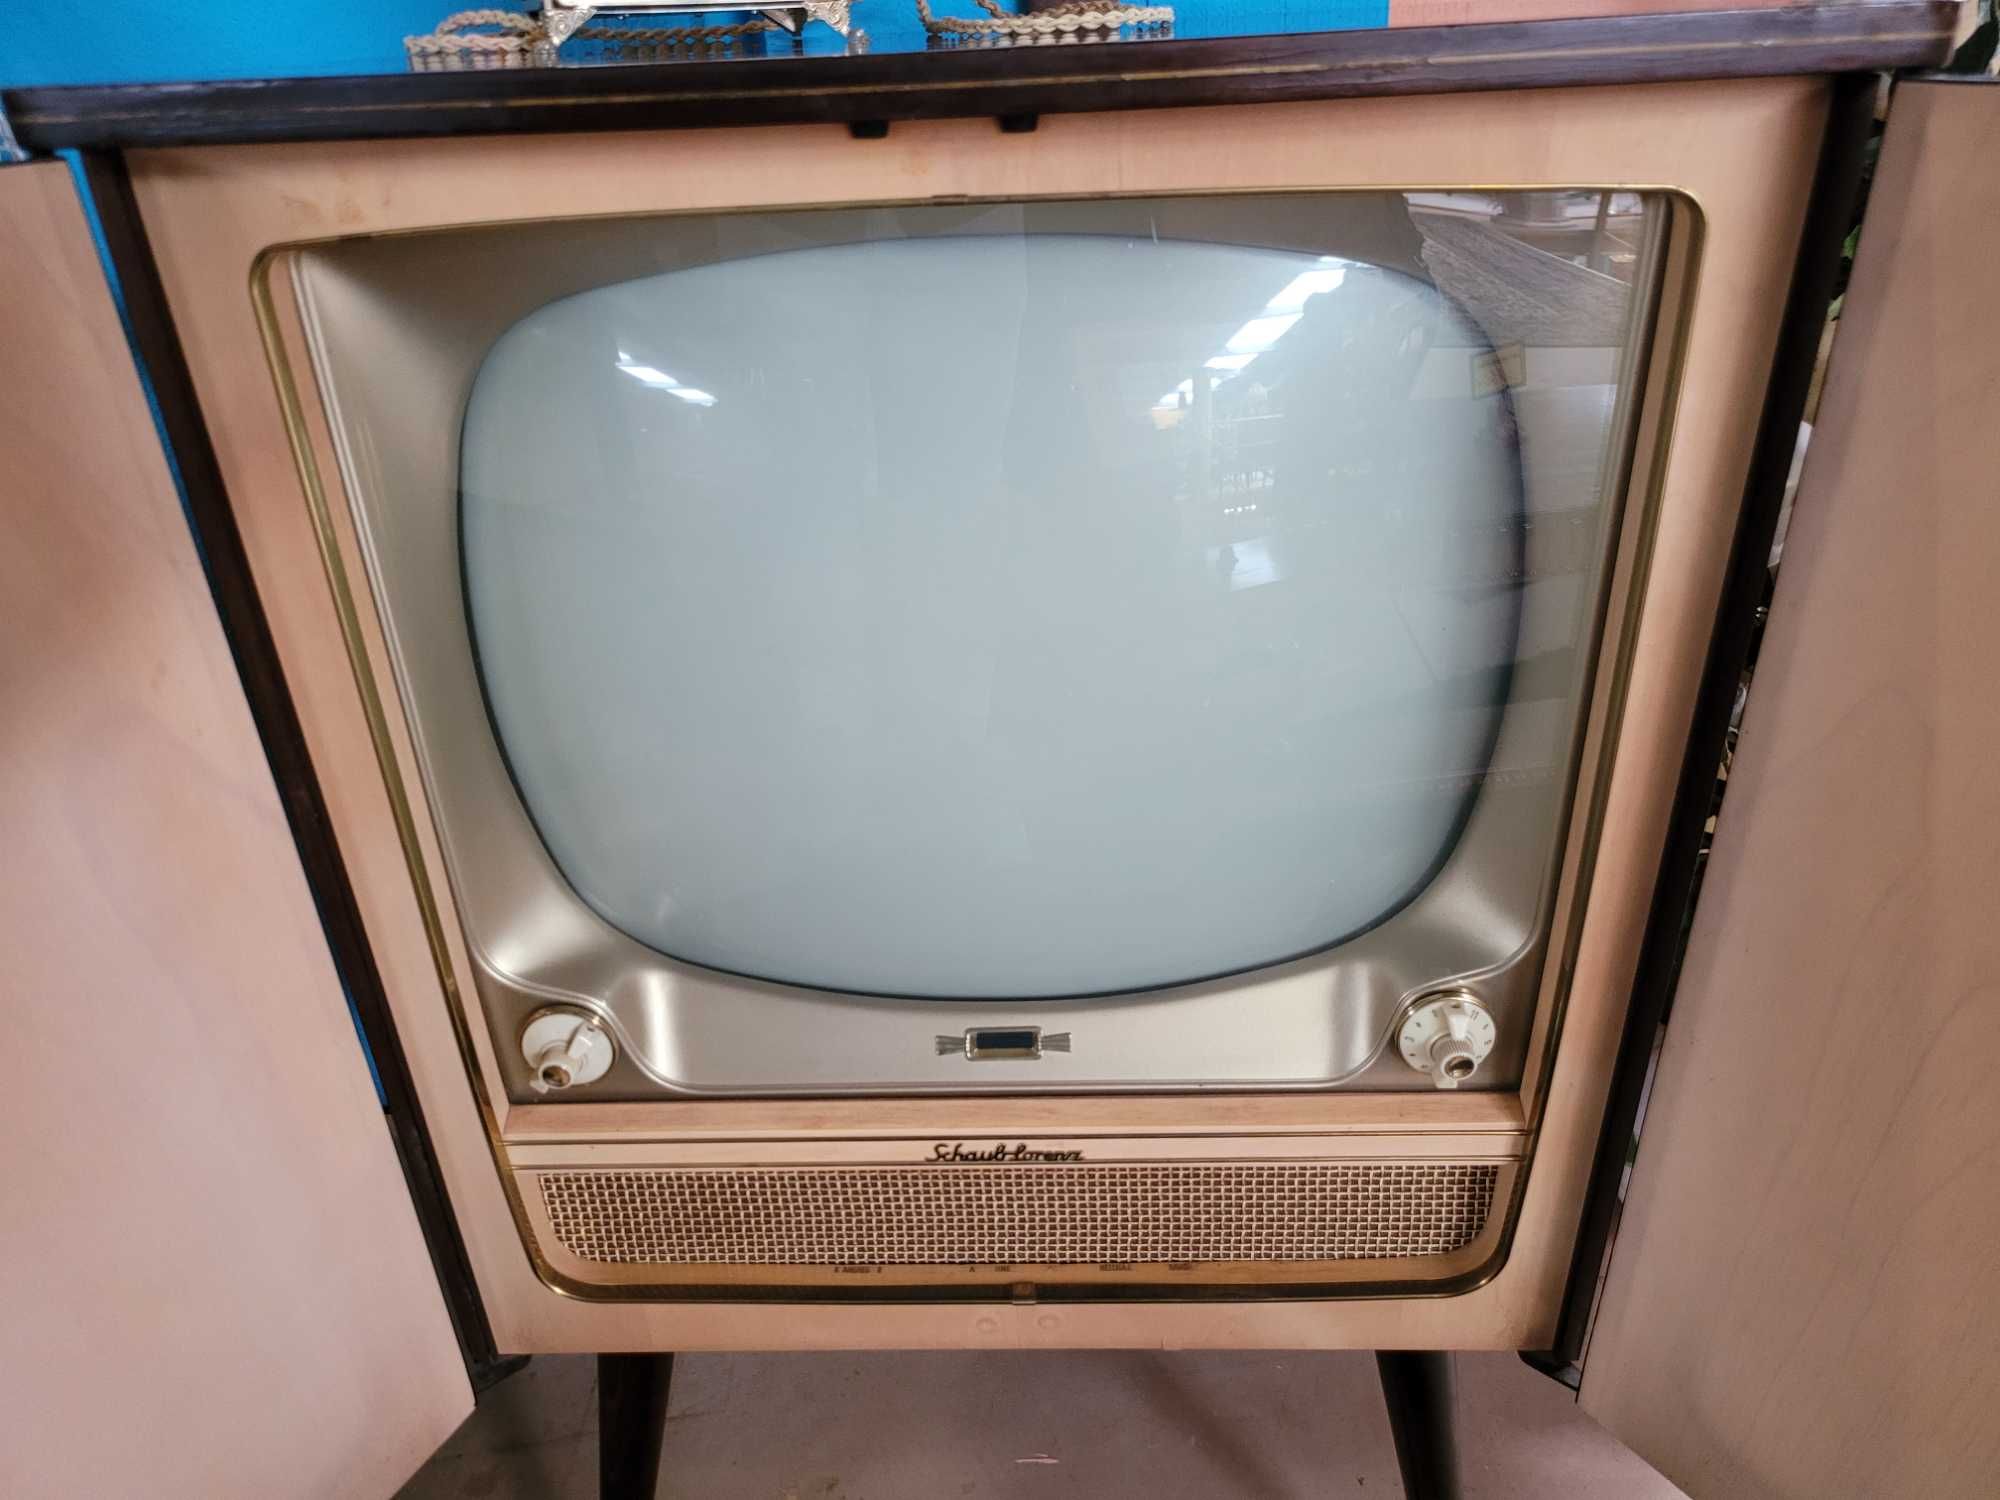 TV Vintage Muito bom estado geral